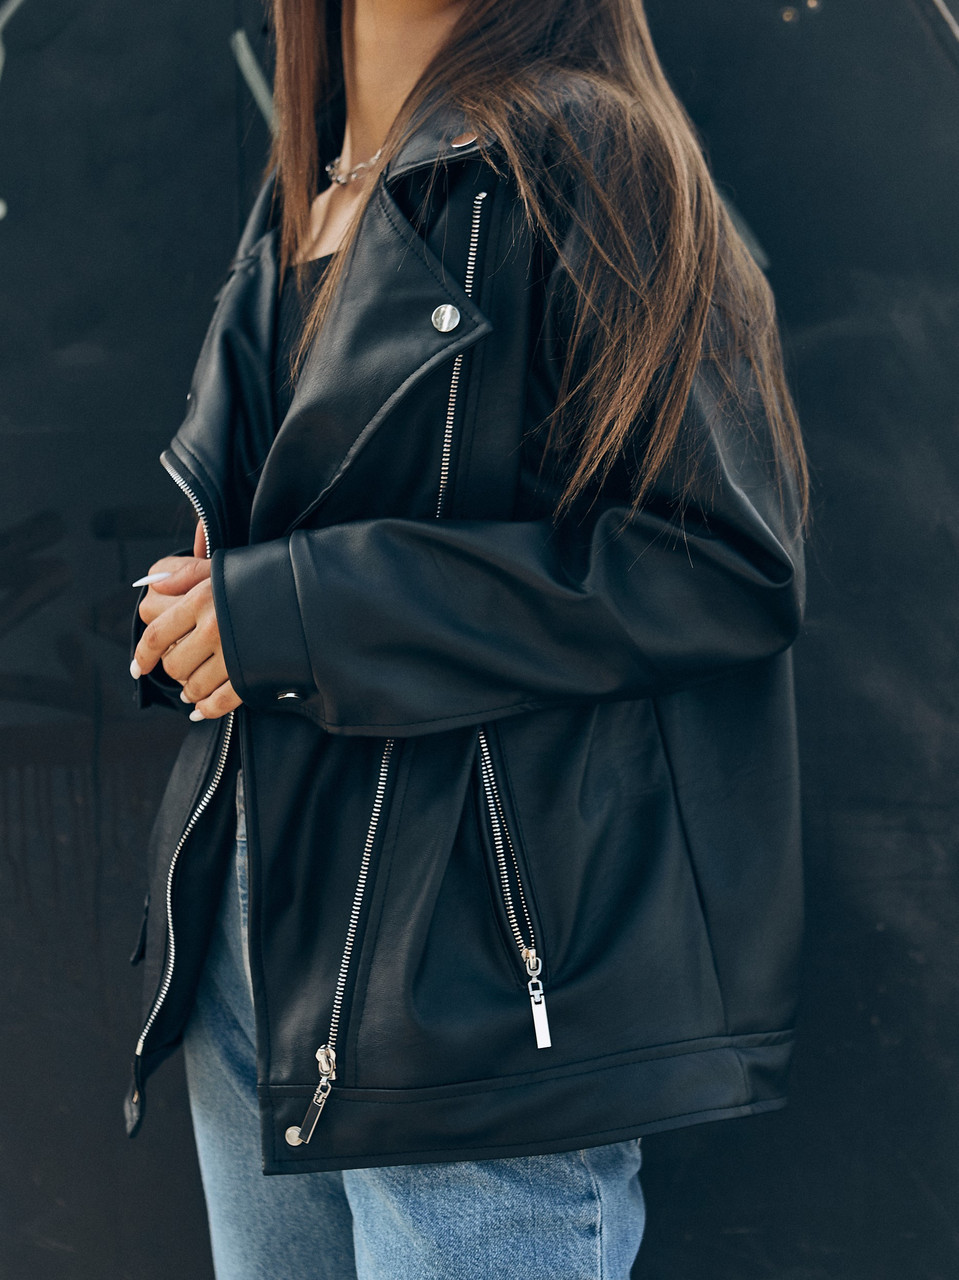 Косуха оверсайз жіноча, видовжена чорна марка TUR модель Аманда, розмір S, M TURWEAR